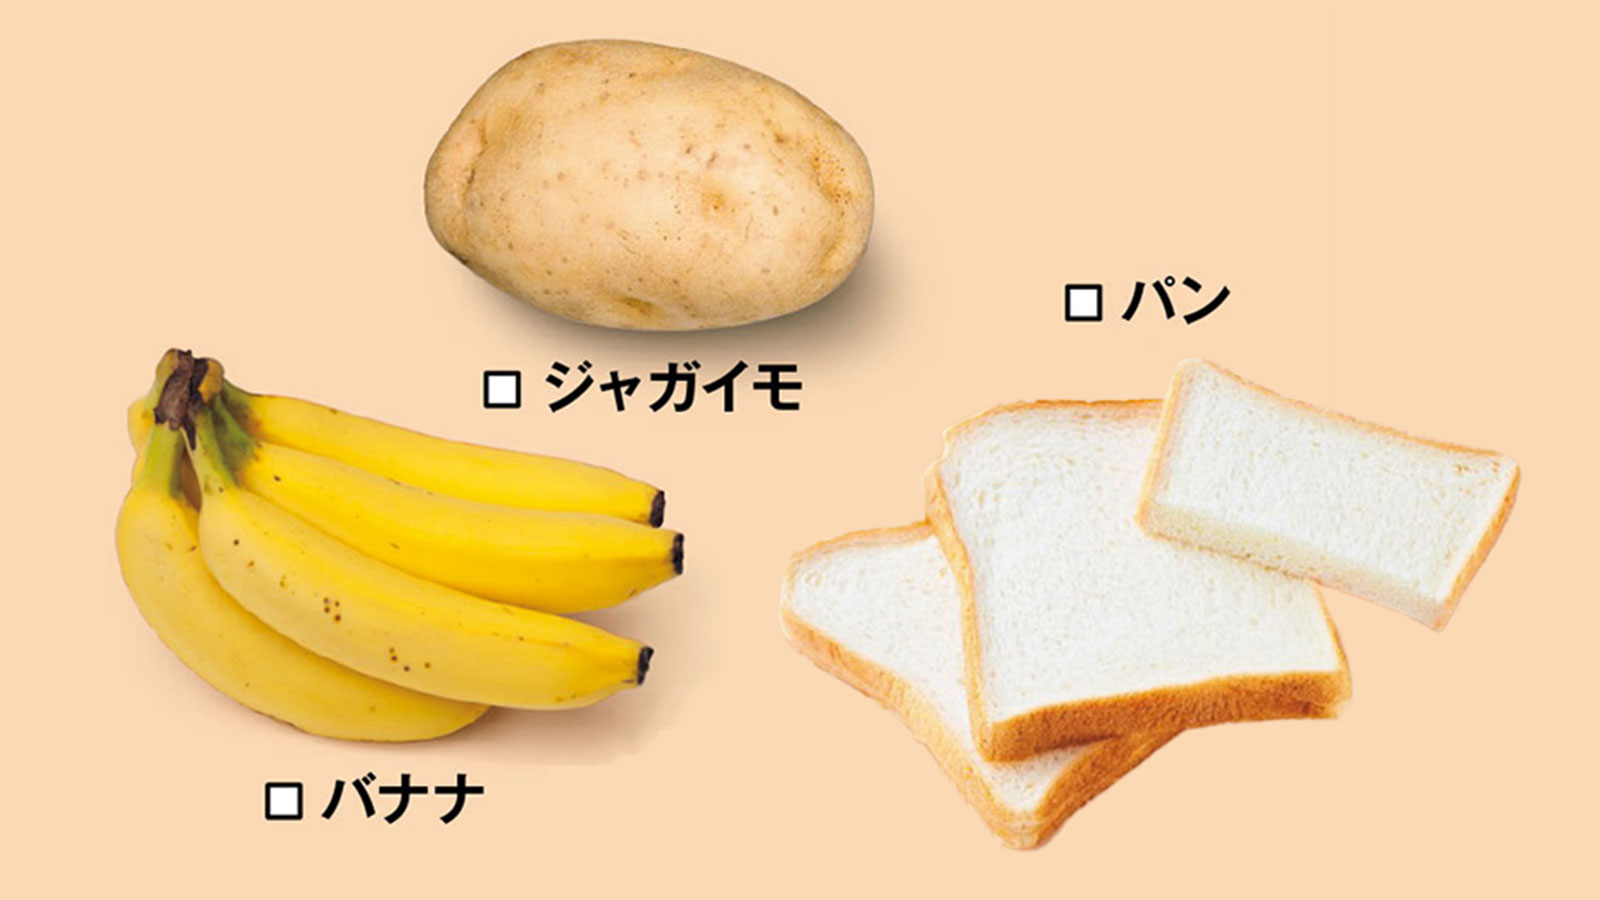 バナナ、じゃがいも、食パン